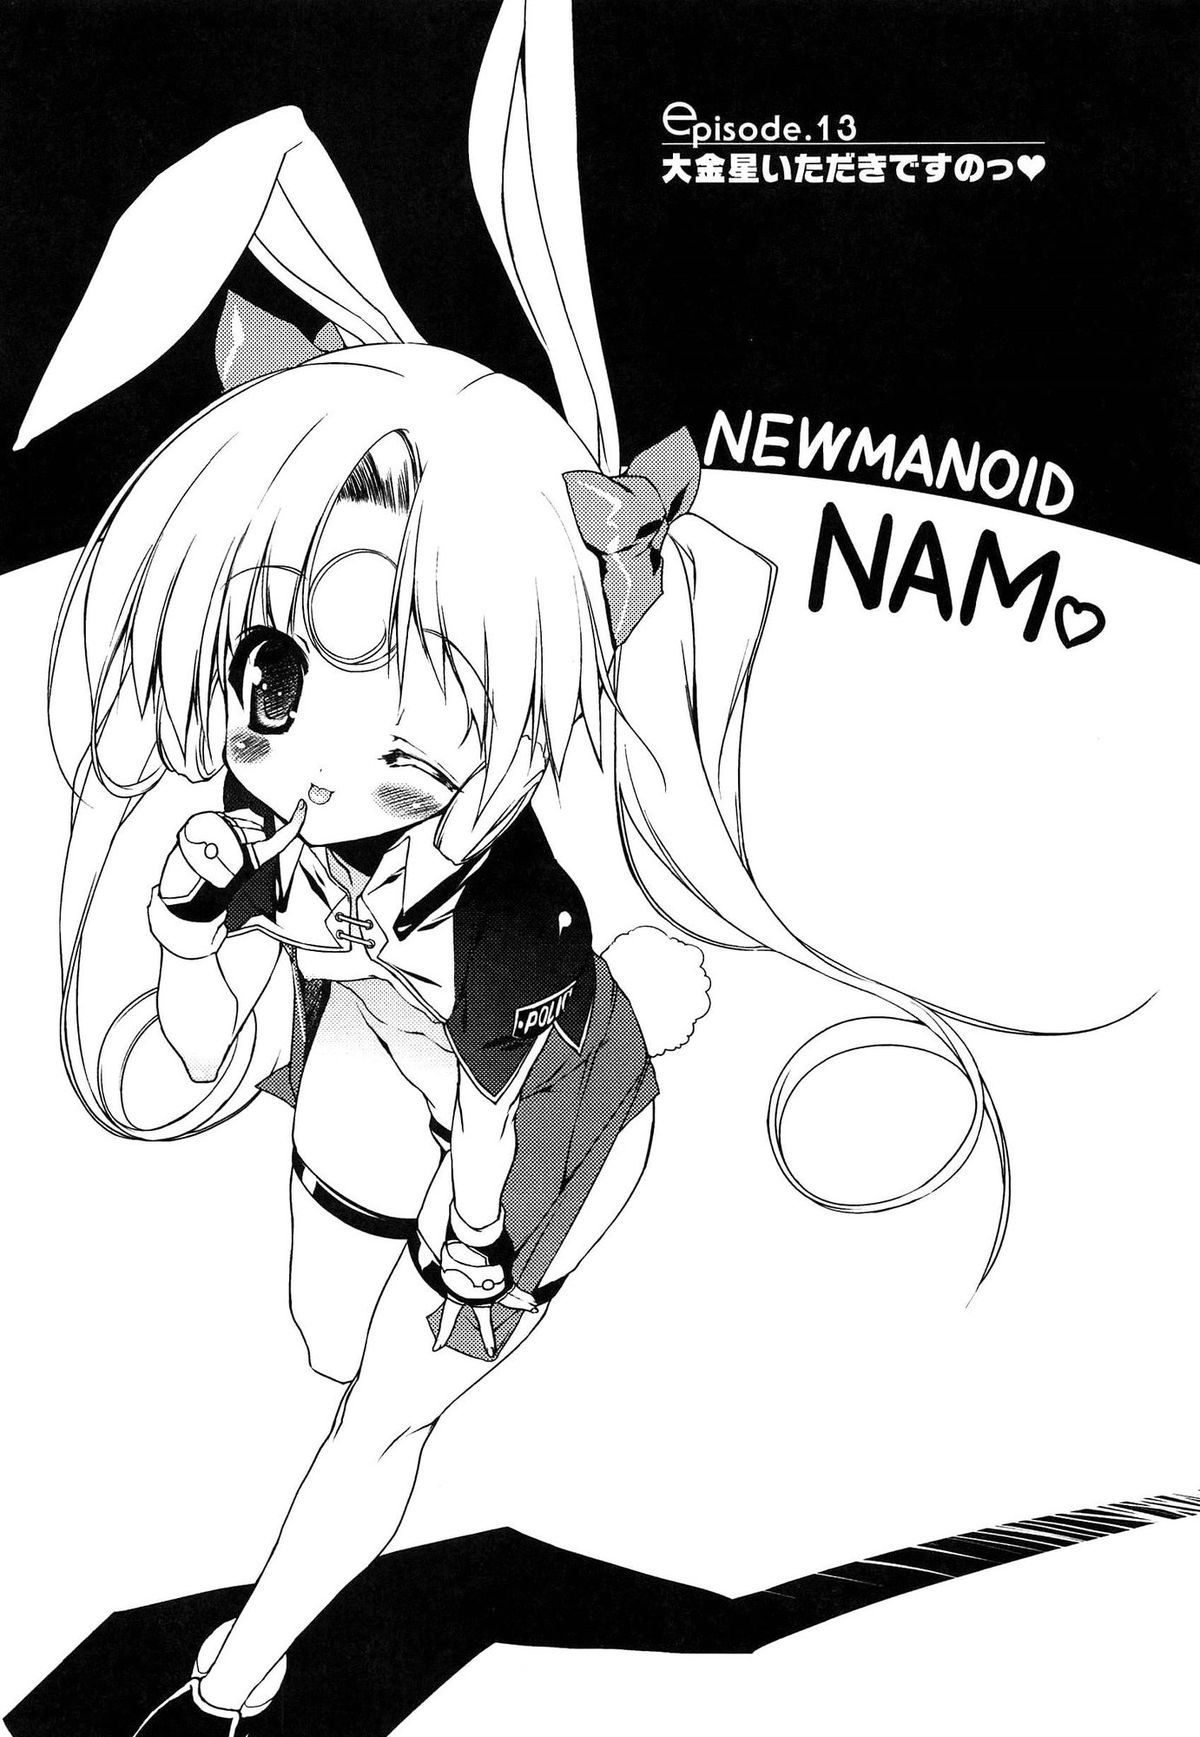 [うろたん] Newmanoid CAM Vol.2 初回限定版 -The Making of Newmanoid CAM-